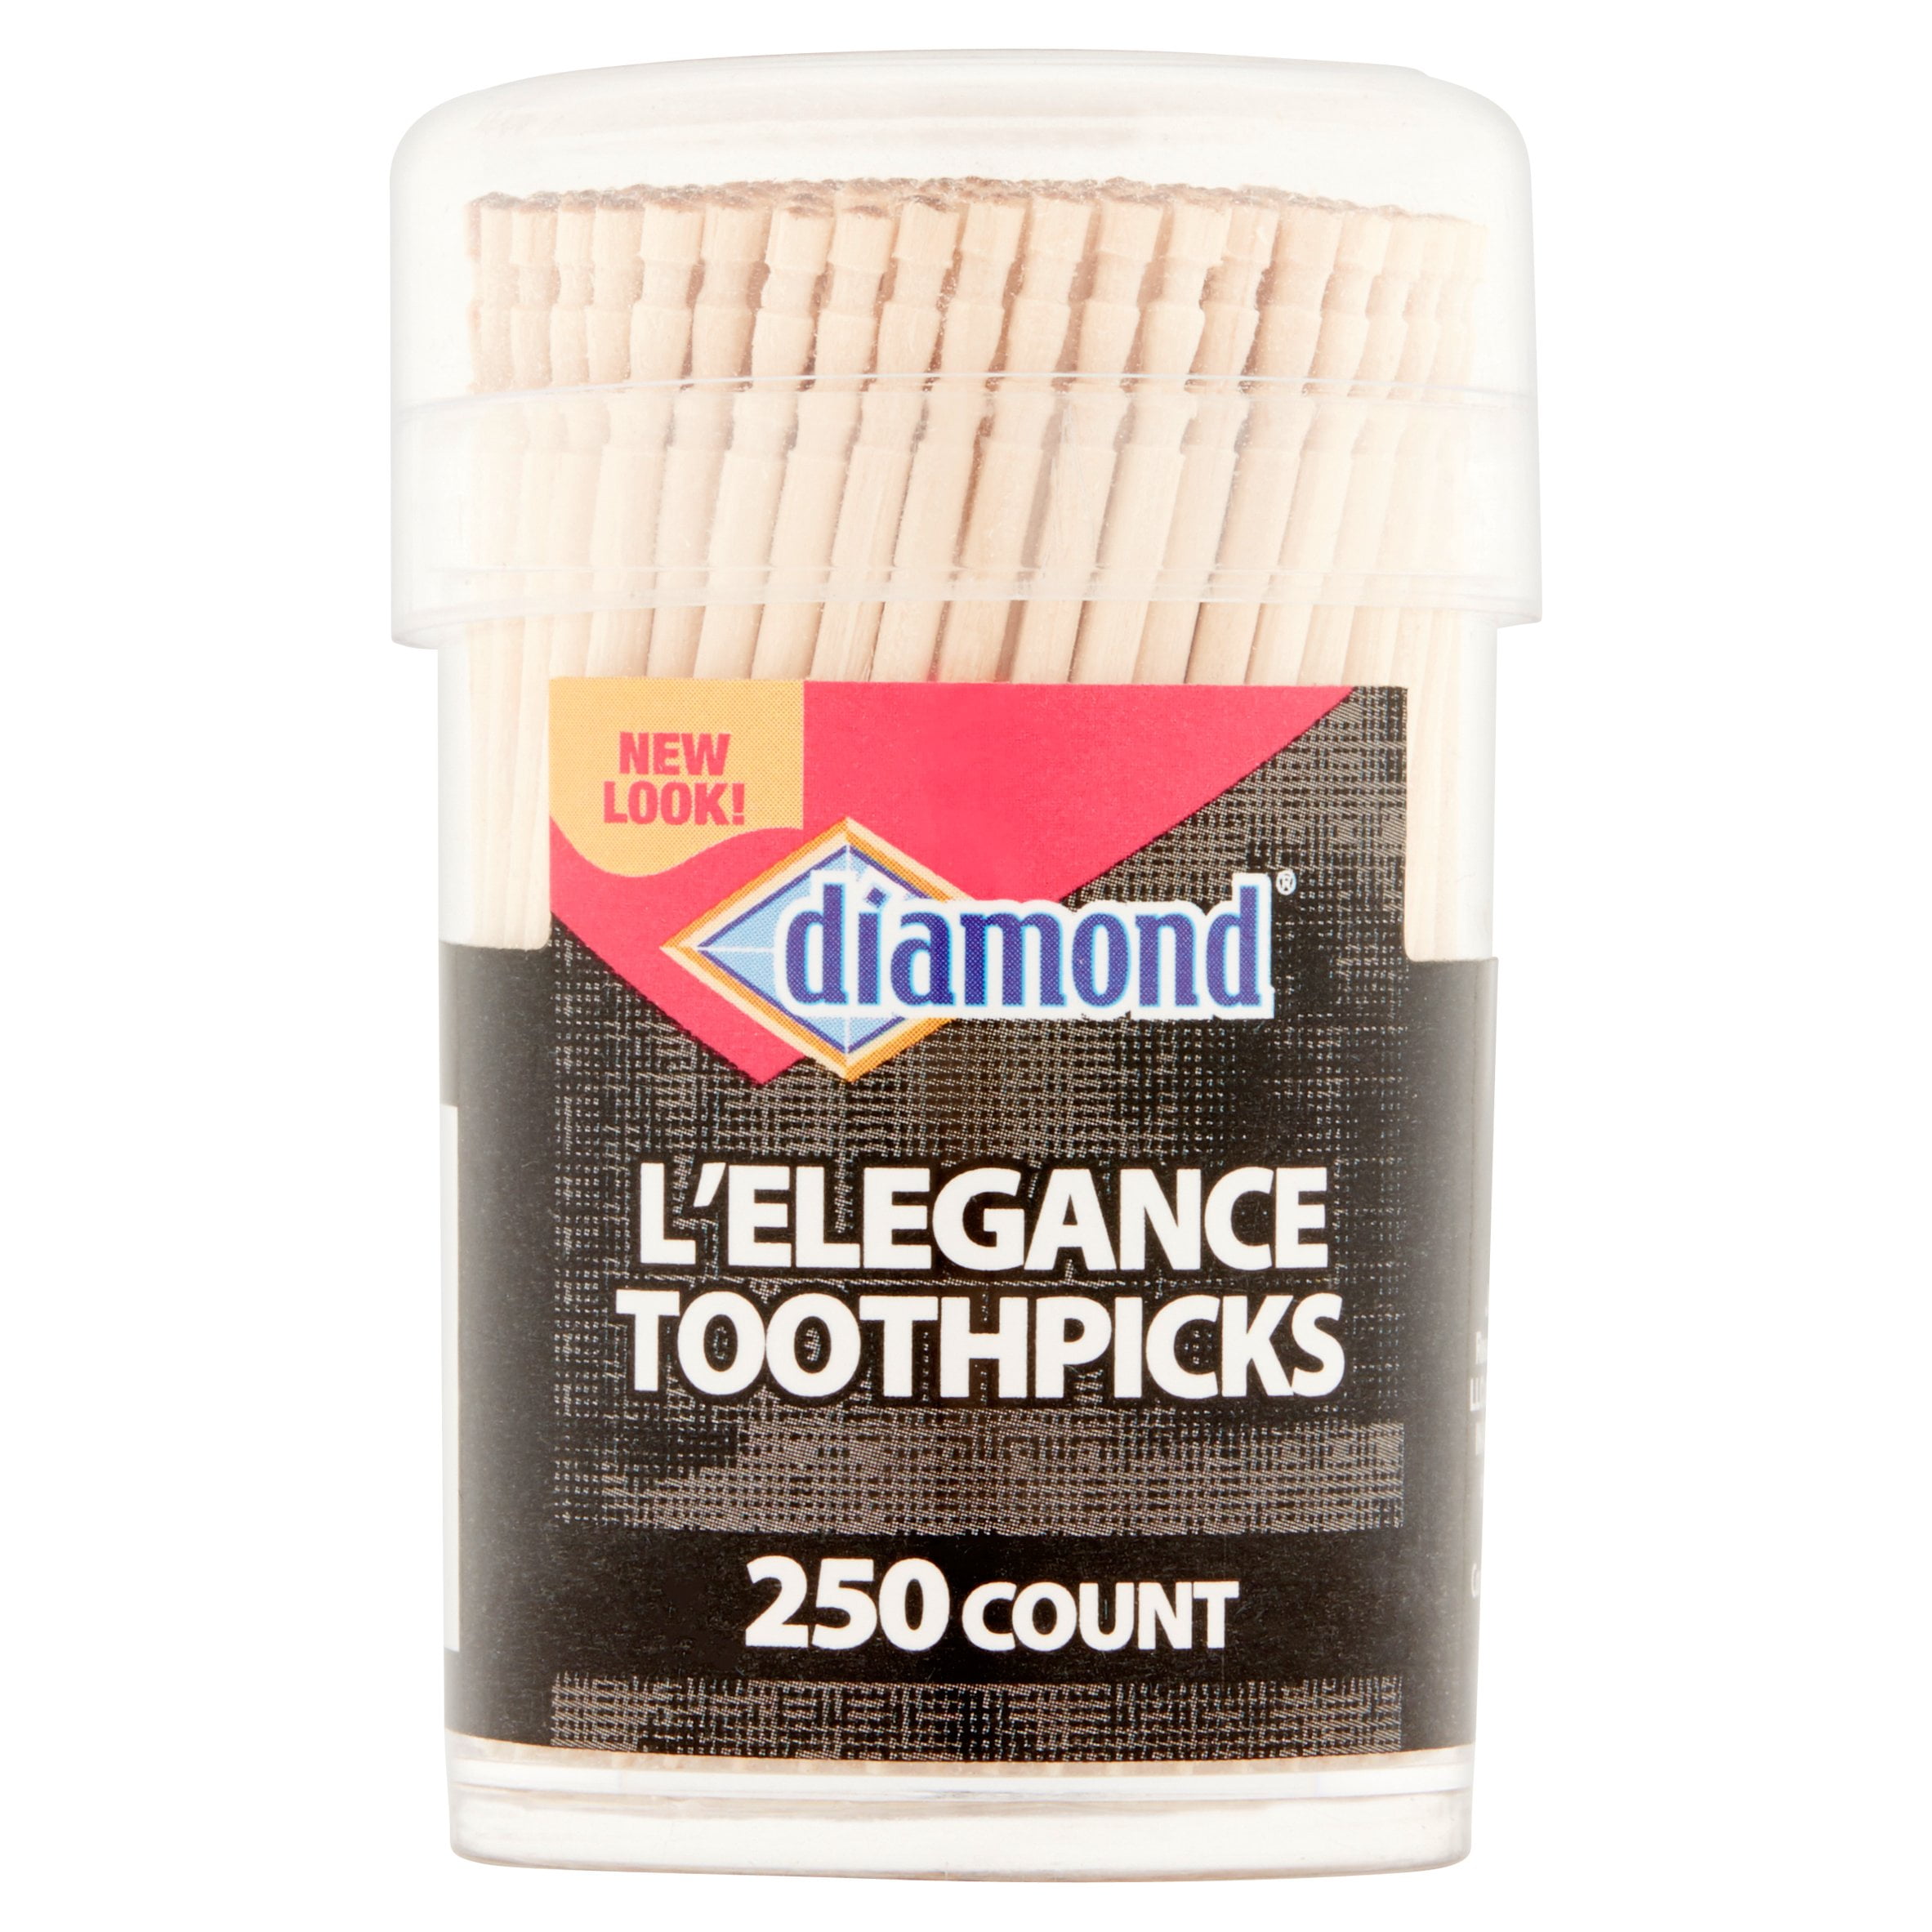 Diamond L'Elegance Toothpicks, 250 count